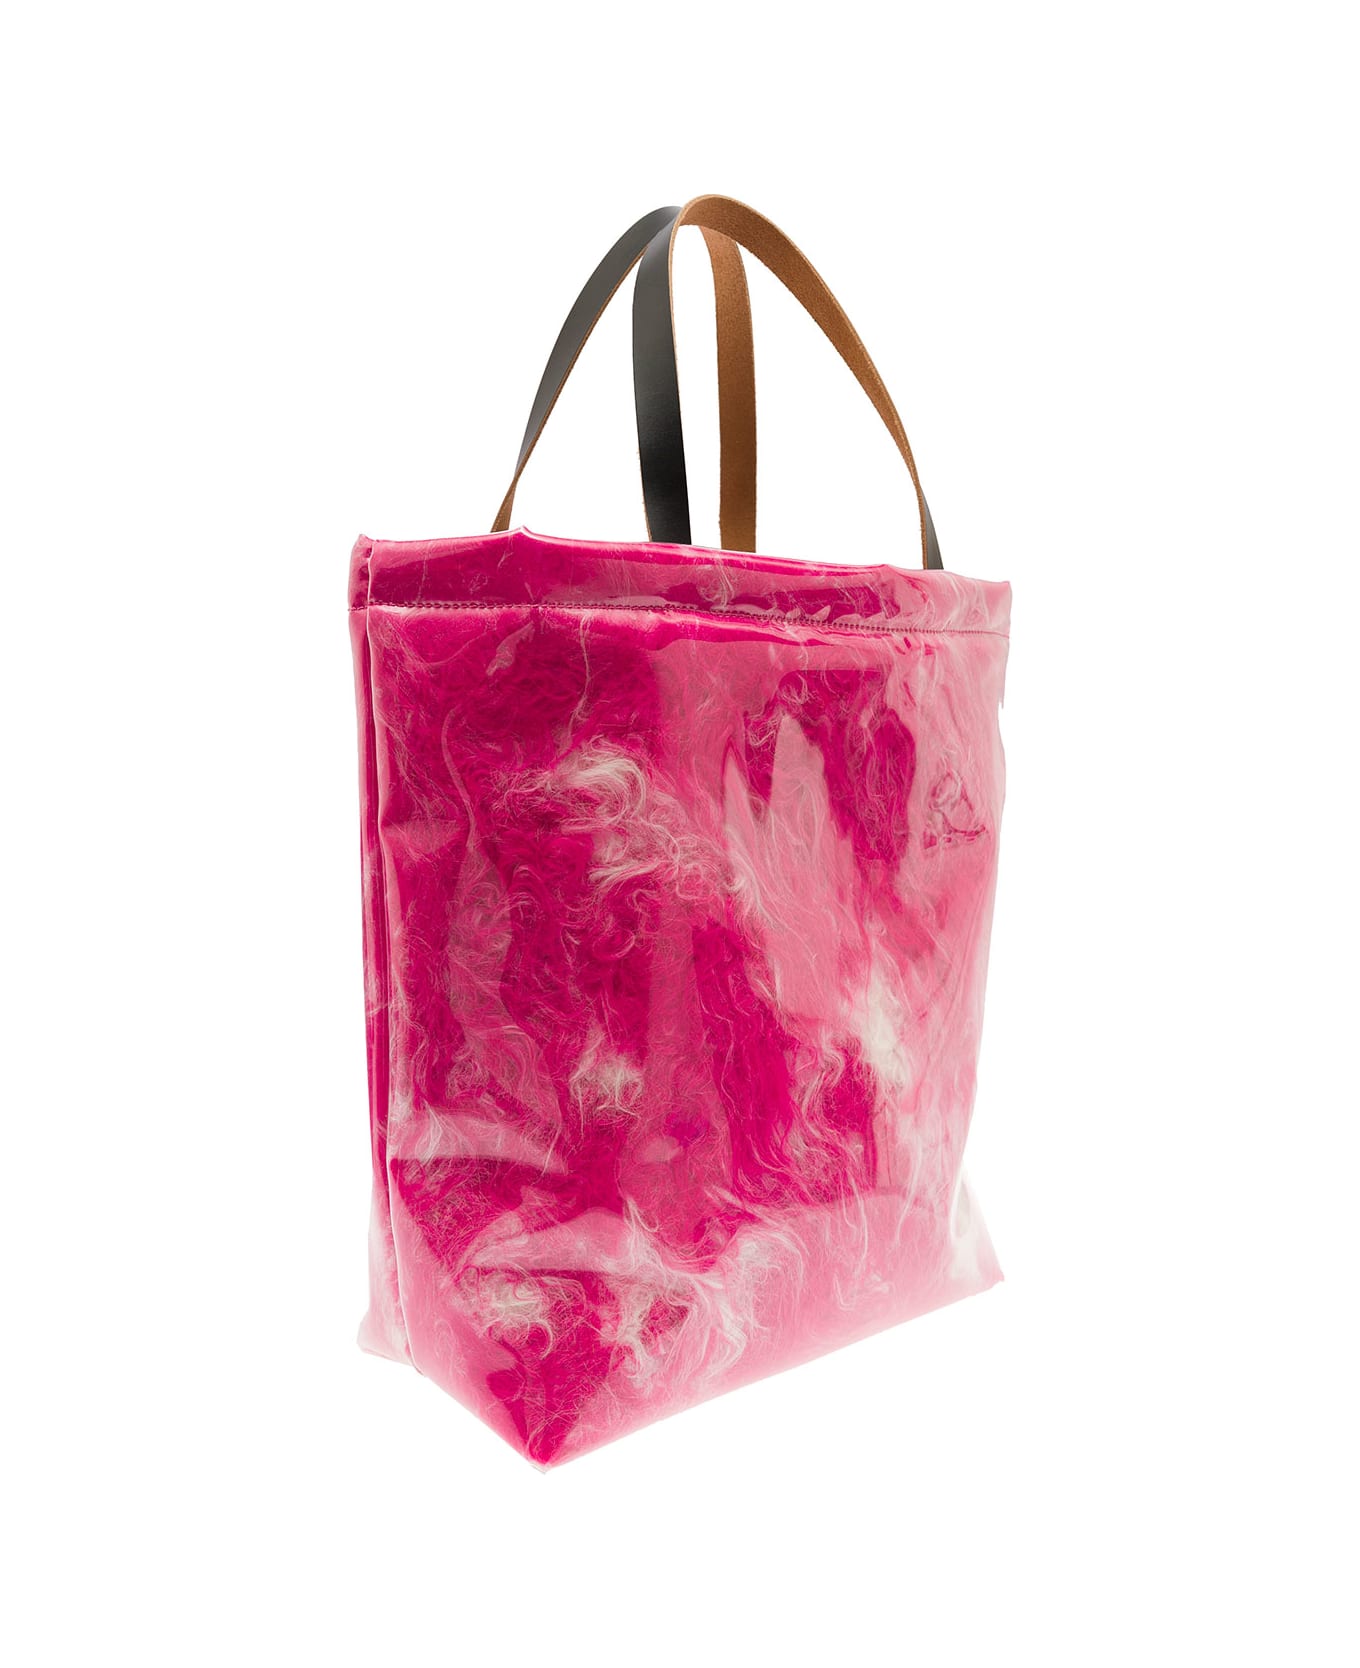 Marni Hot Pink Faux Fur Tote Bag - Fuchsia